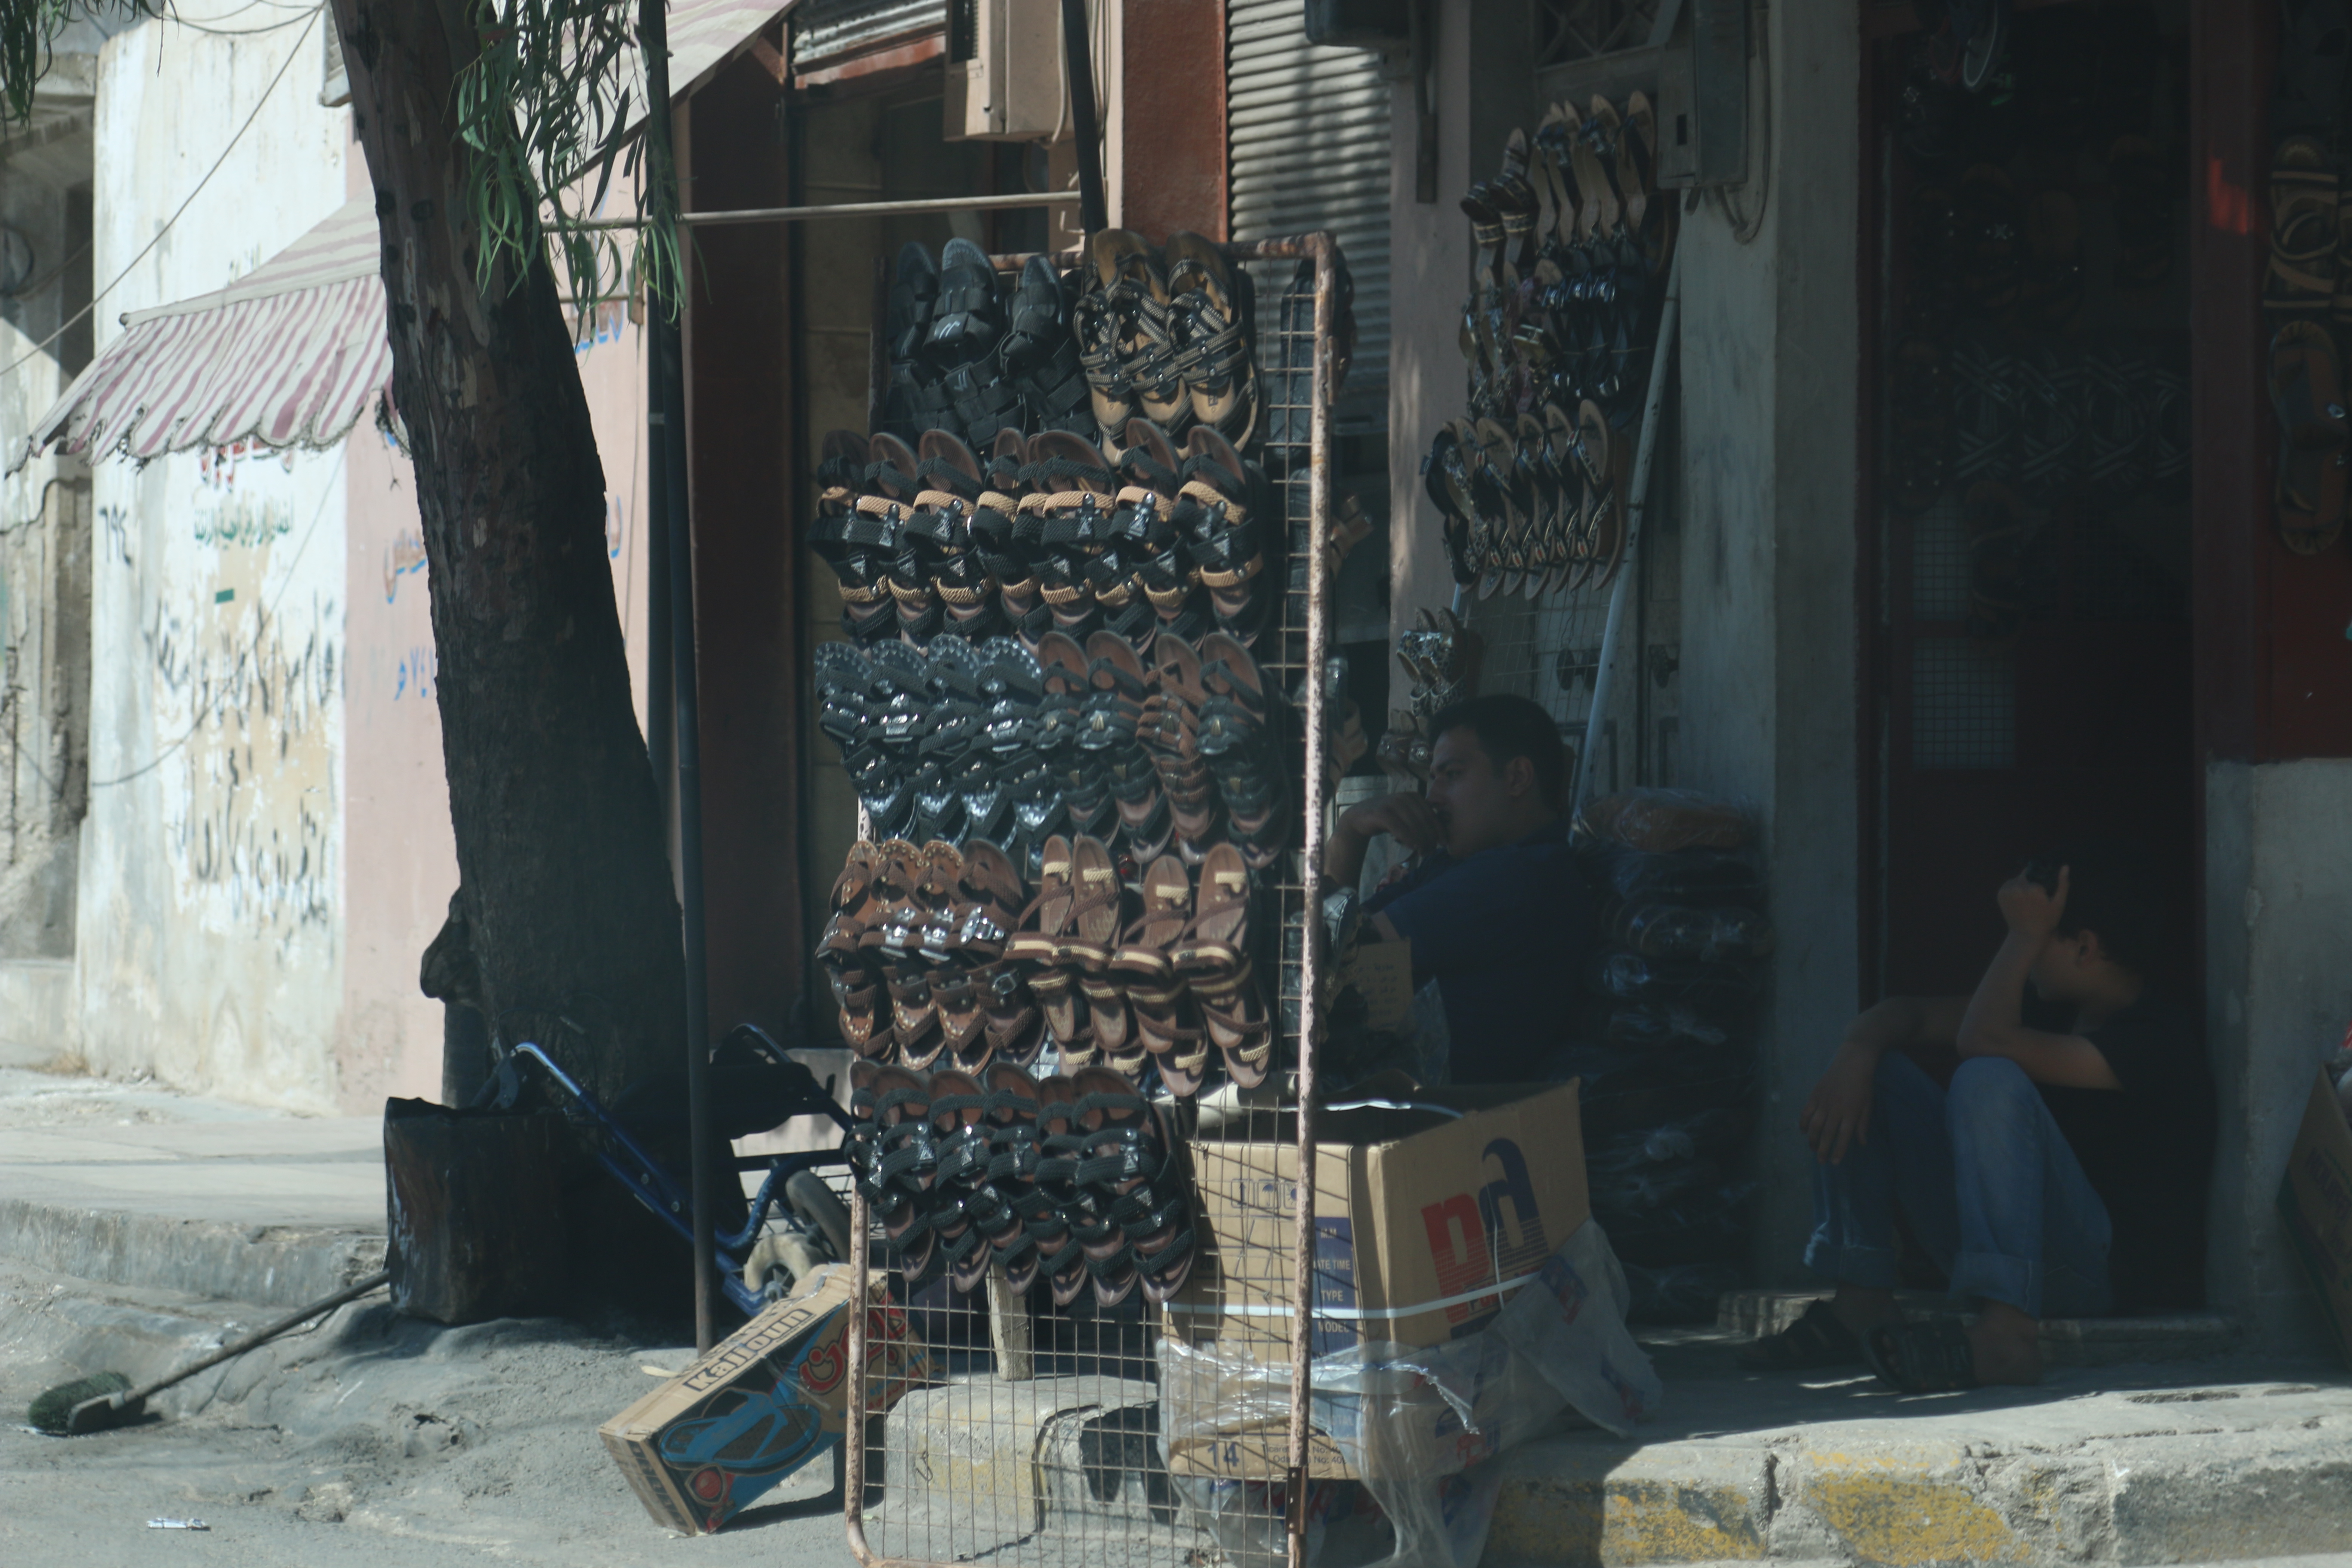 بائع أحذية جلدية في بلدة أرمناز بريف إدلب - 23 حزيران 2017 (عنب بلدي)